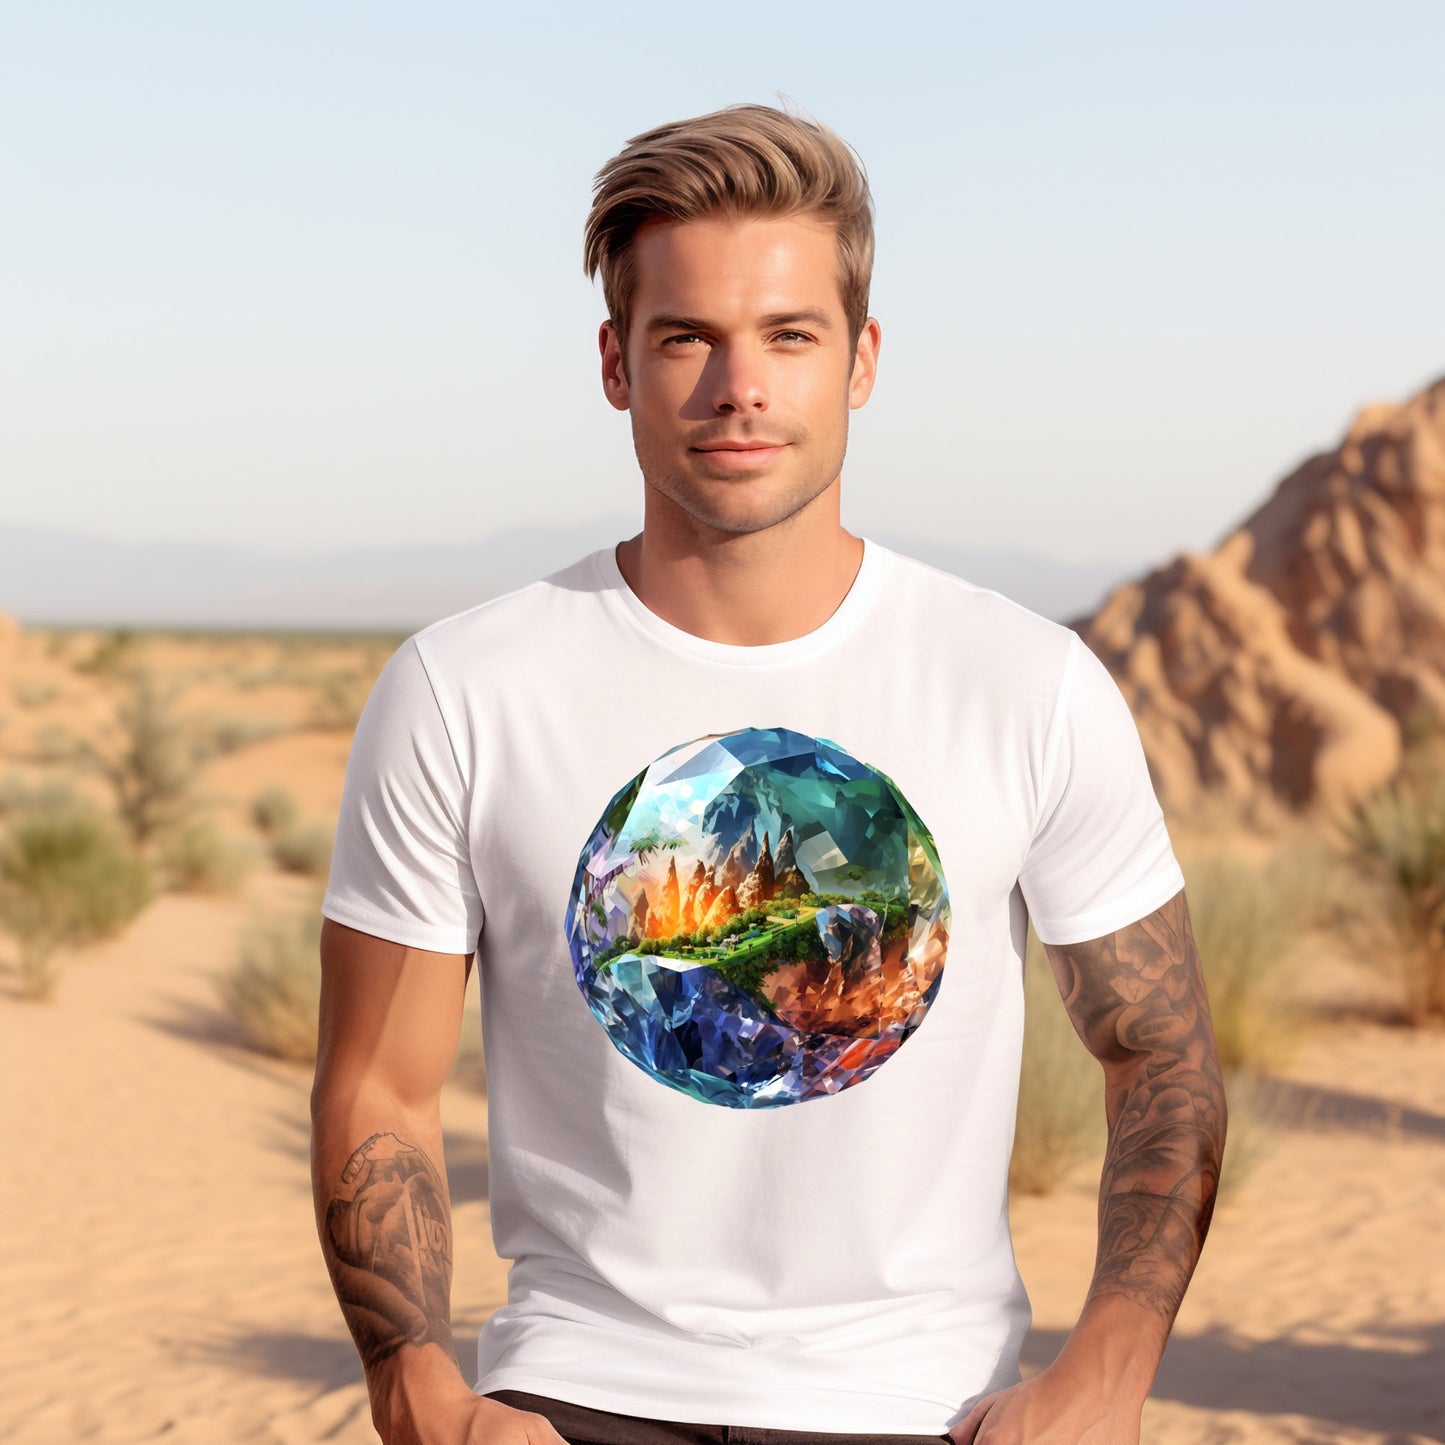 Vyriški marškinėliai „Diamond Earth” su spalvingu deimanto ir gamtos motyvu, Designed By Me kolekcija, atskleidžia individualumą ir sugebėjimą matyti gyvenimo blizgesį, net kai pasaulis pilkas, Vyriški marškinėliai,Visi produktai